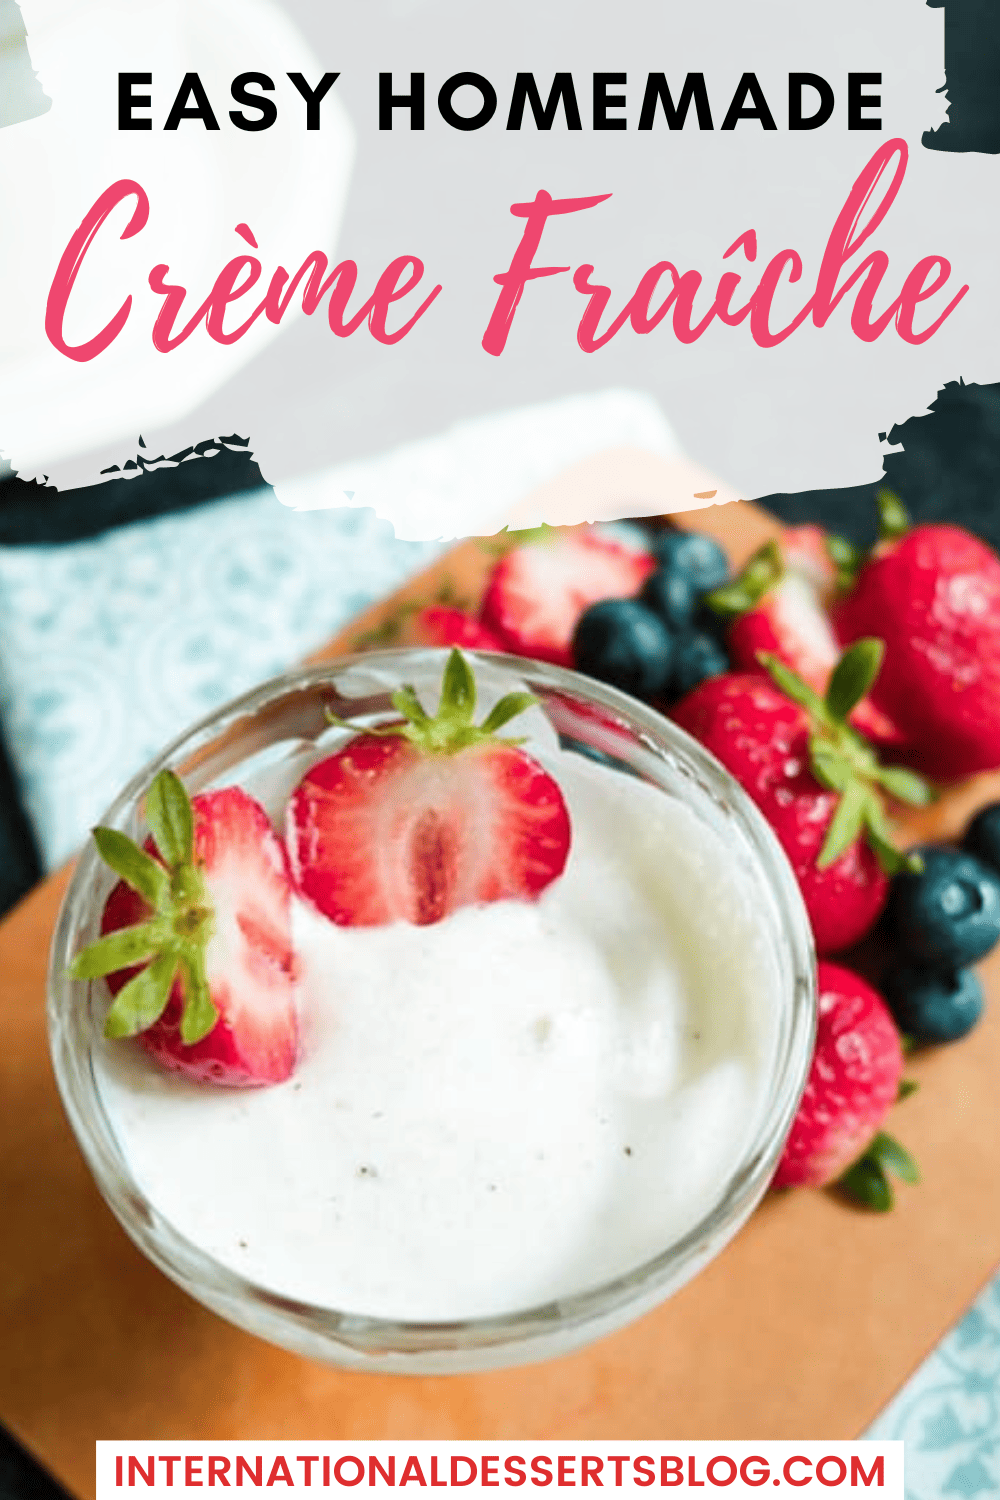 What Is Creme Fraiche?